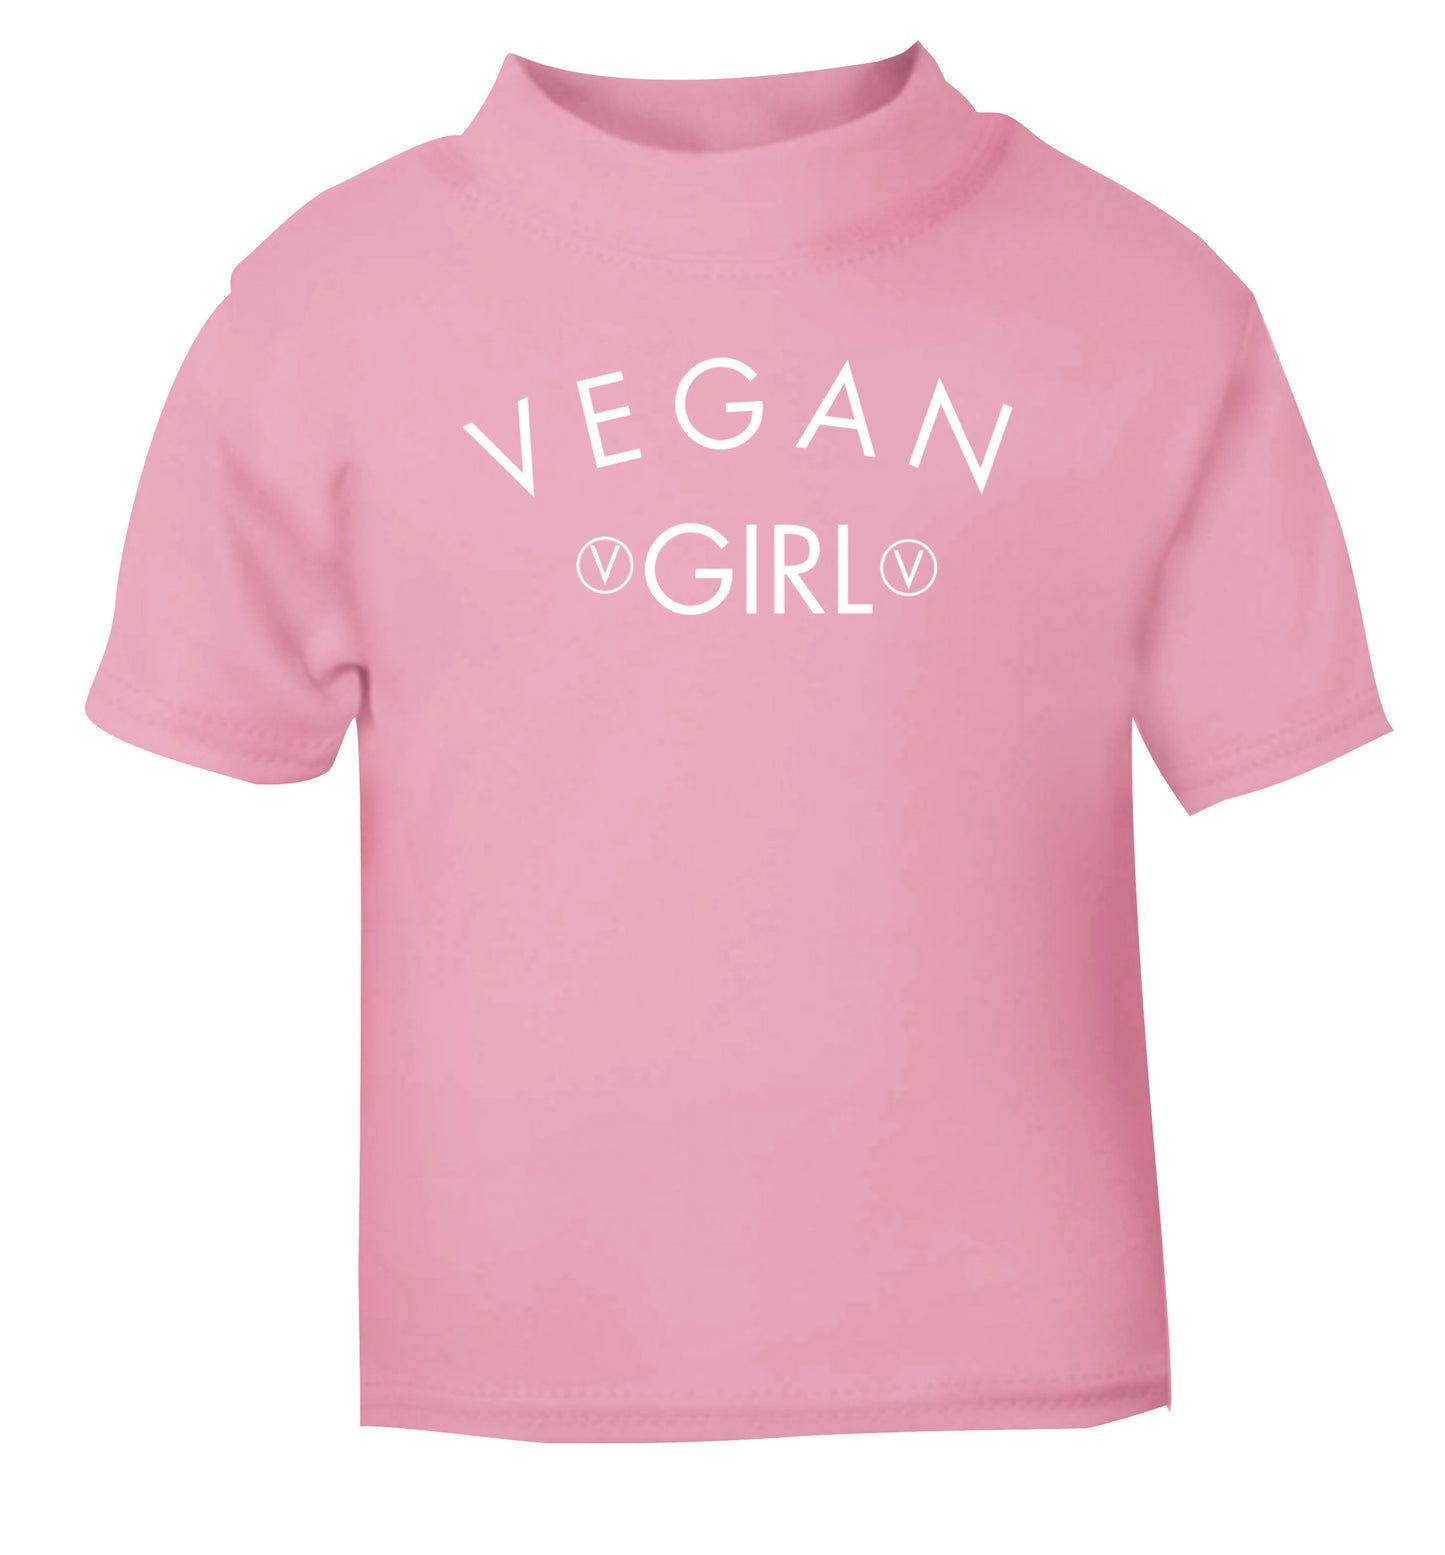 Vegan girl light pink Baby Toddler Tshirt 2 Years